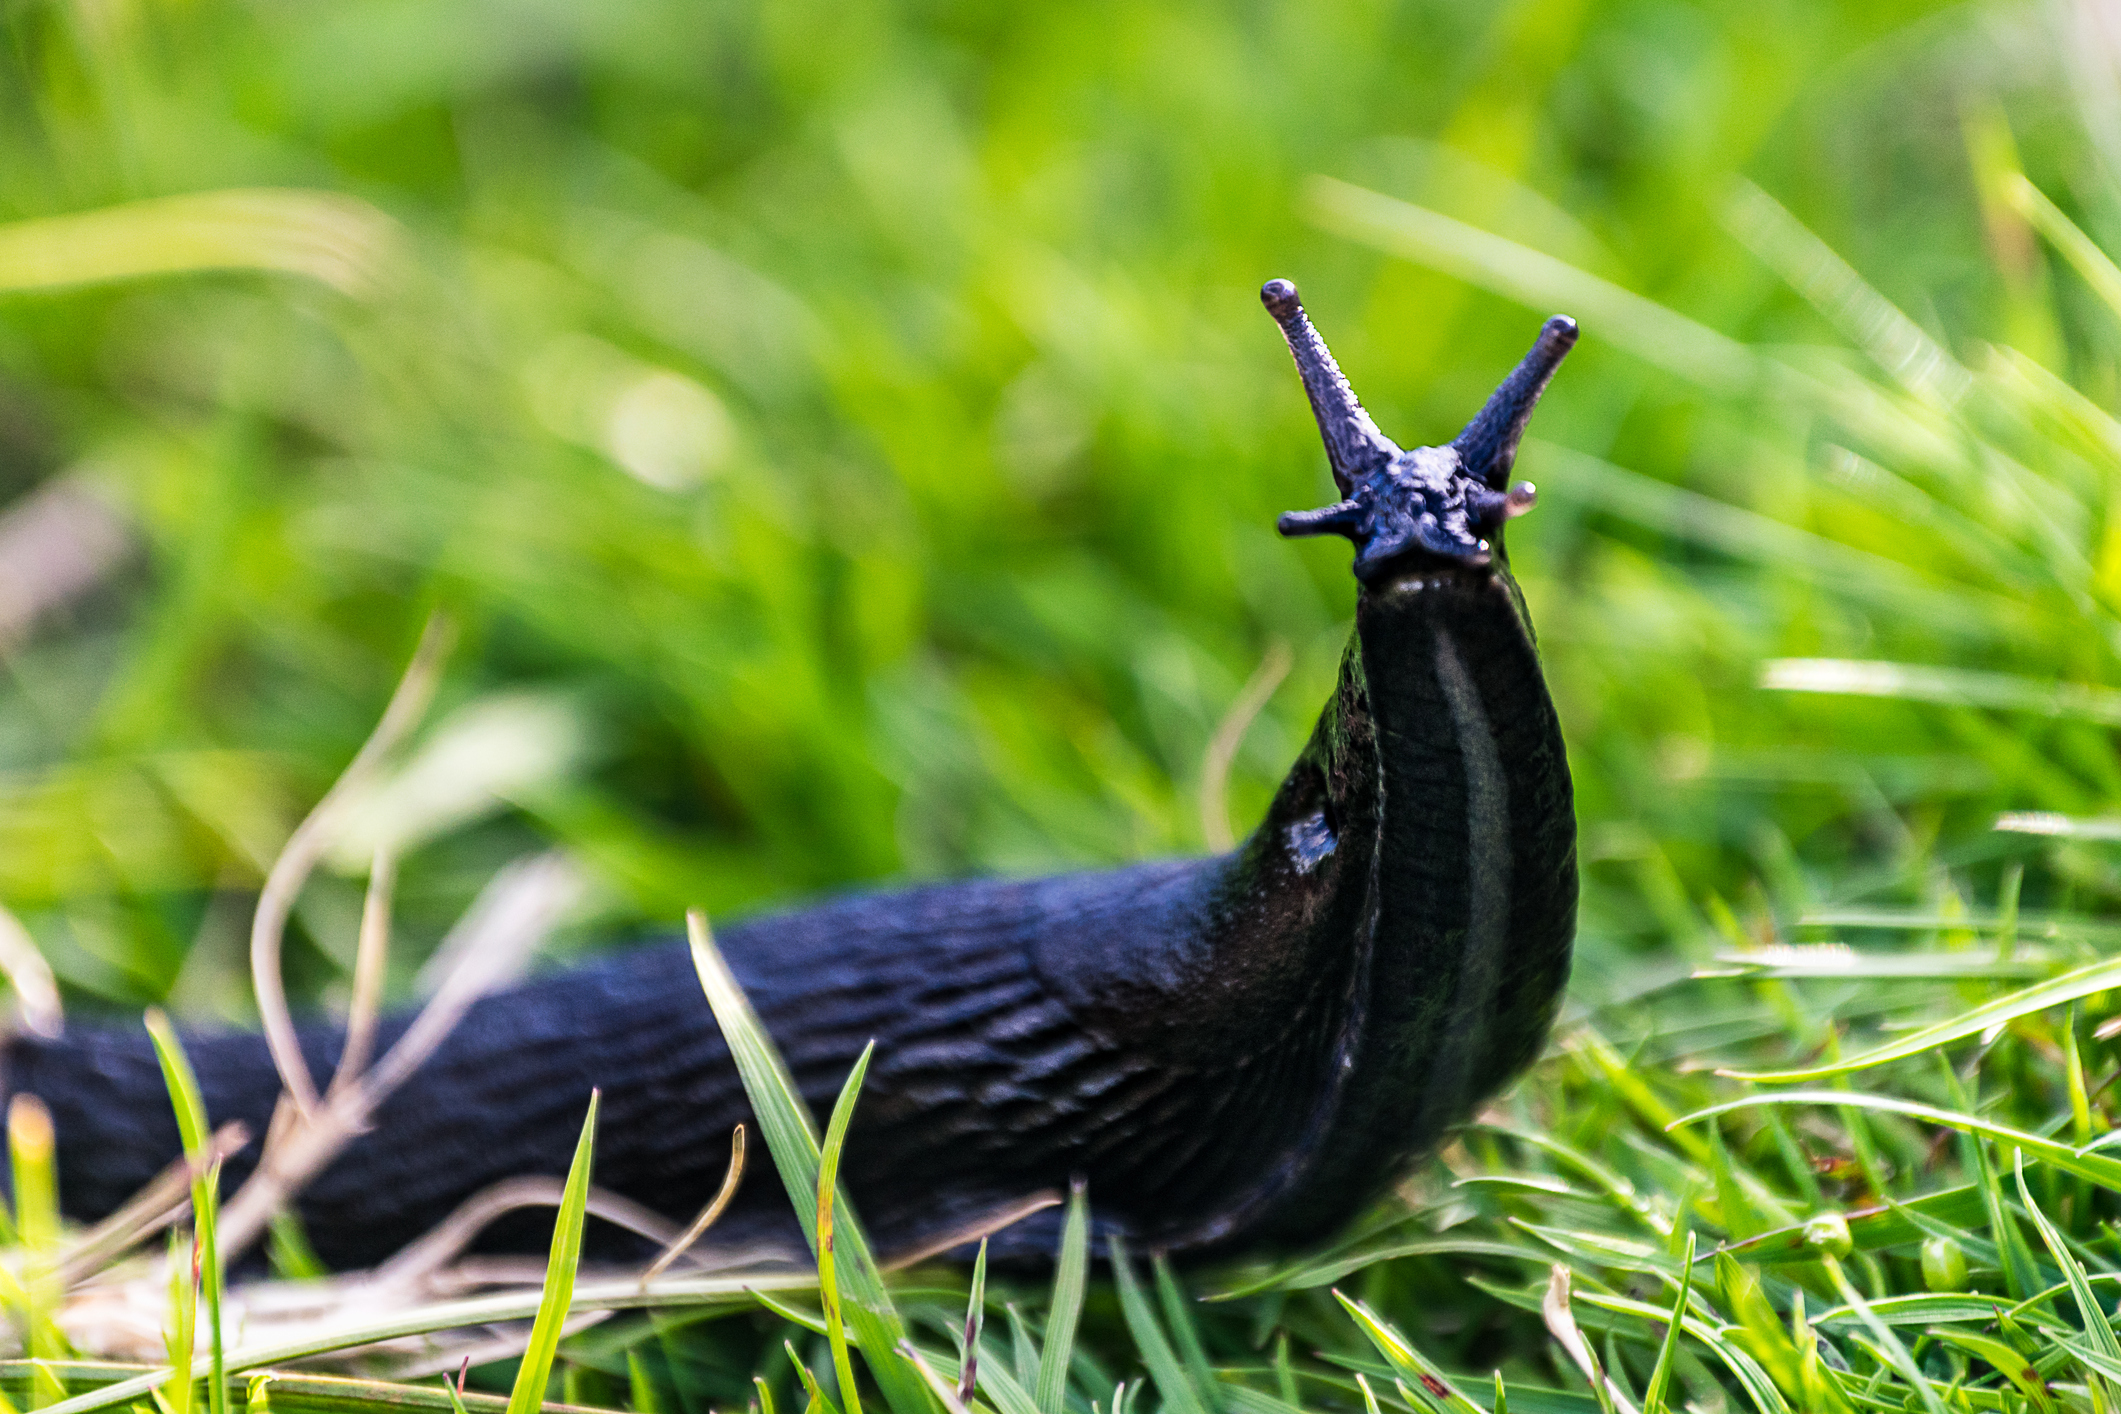 Slugs feast on plants in wet weather (Thinkstock/PA)